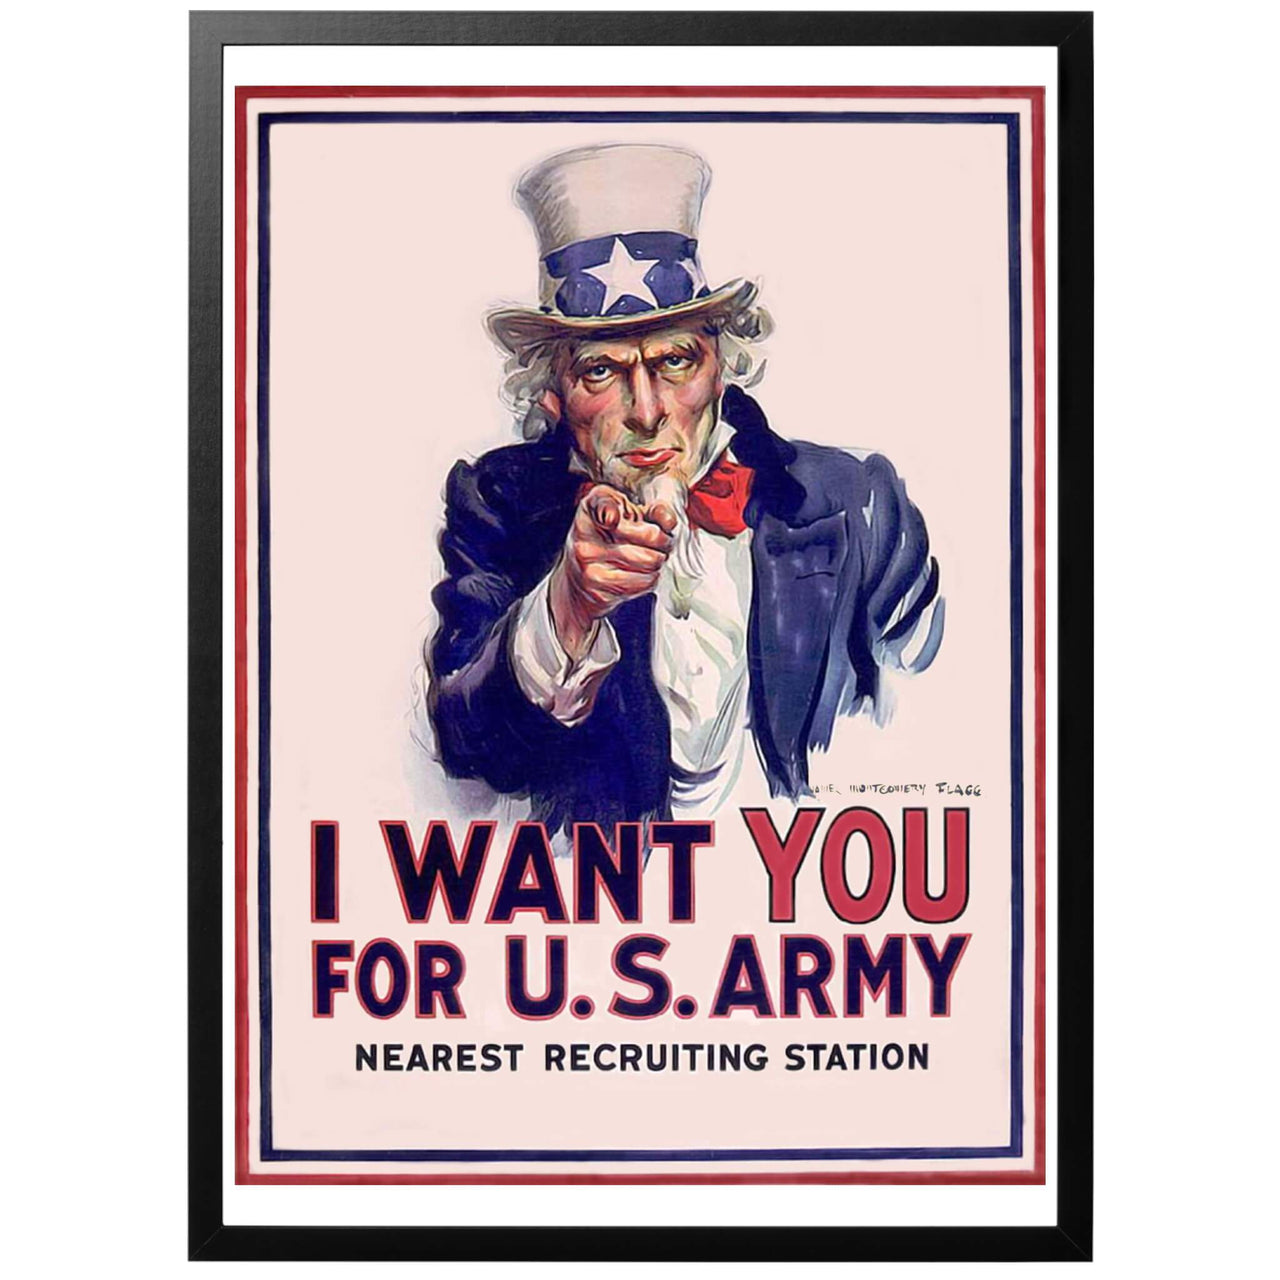 I want you for US army Sv - "Jag vill ha dig för amerikanska armén" Amerikansk WWI och WWII affisch från 1917. Konstnär: J.M. Flagg. Kanske det mest klassiska och kända av alla propagandatryck. Uncle Sam, en personifiering av amerikanska staten.